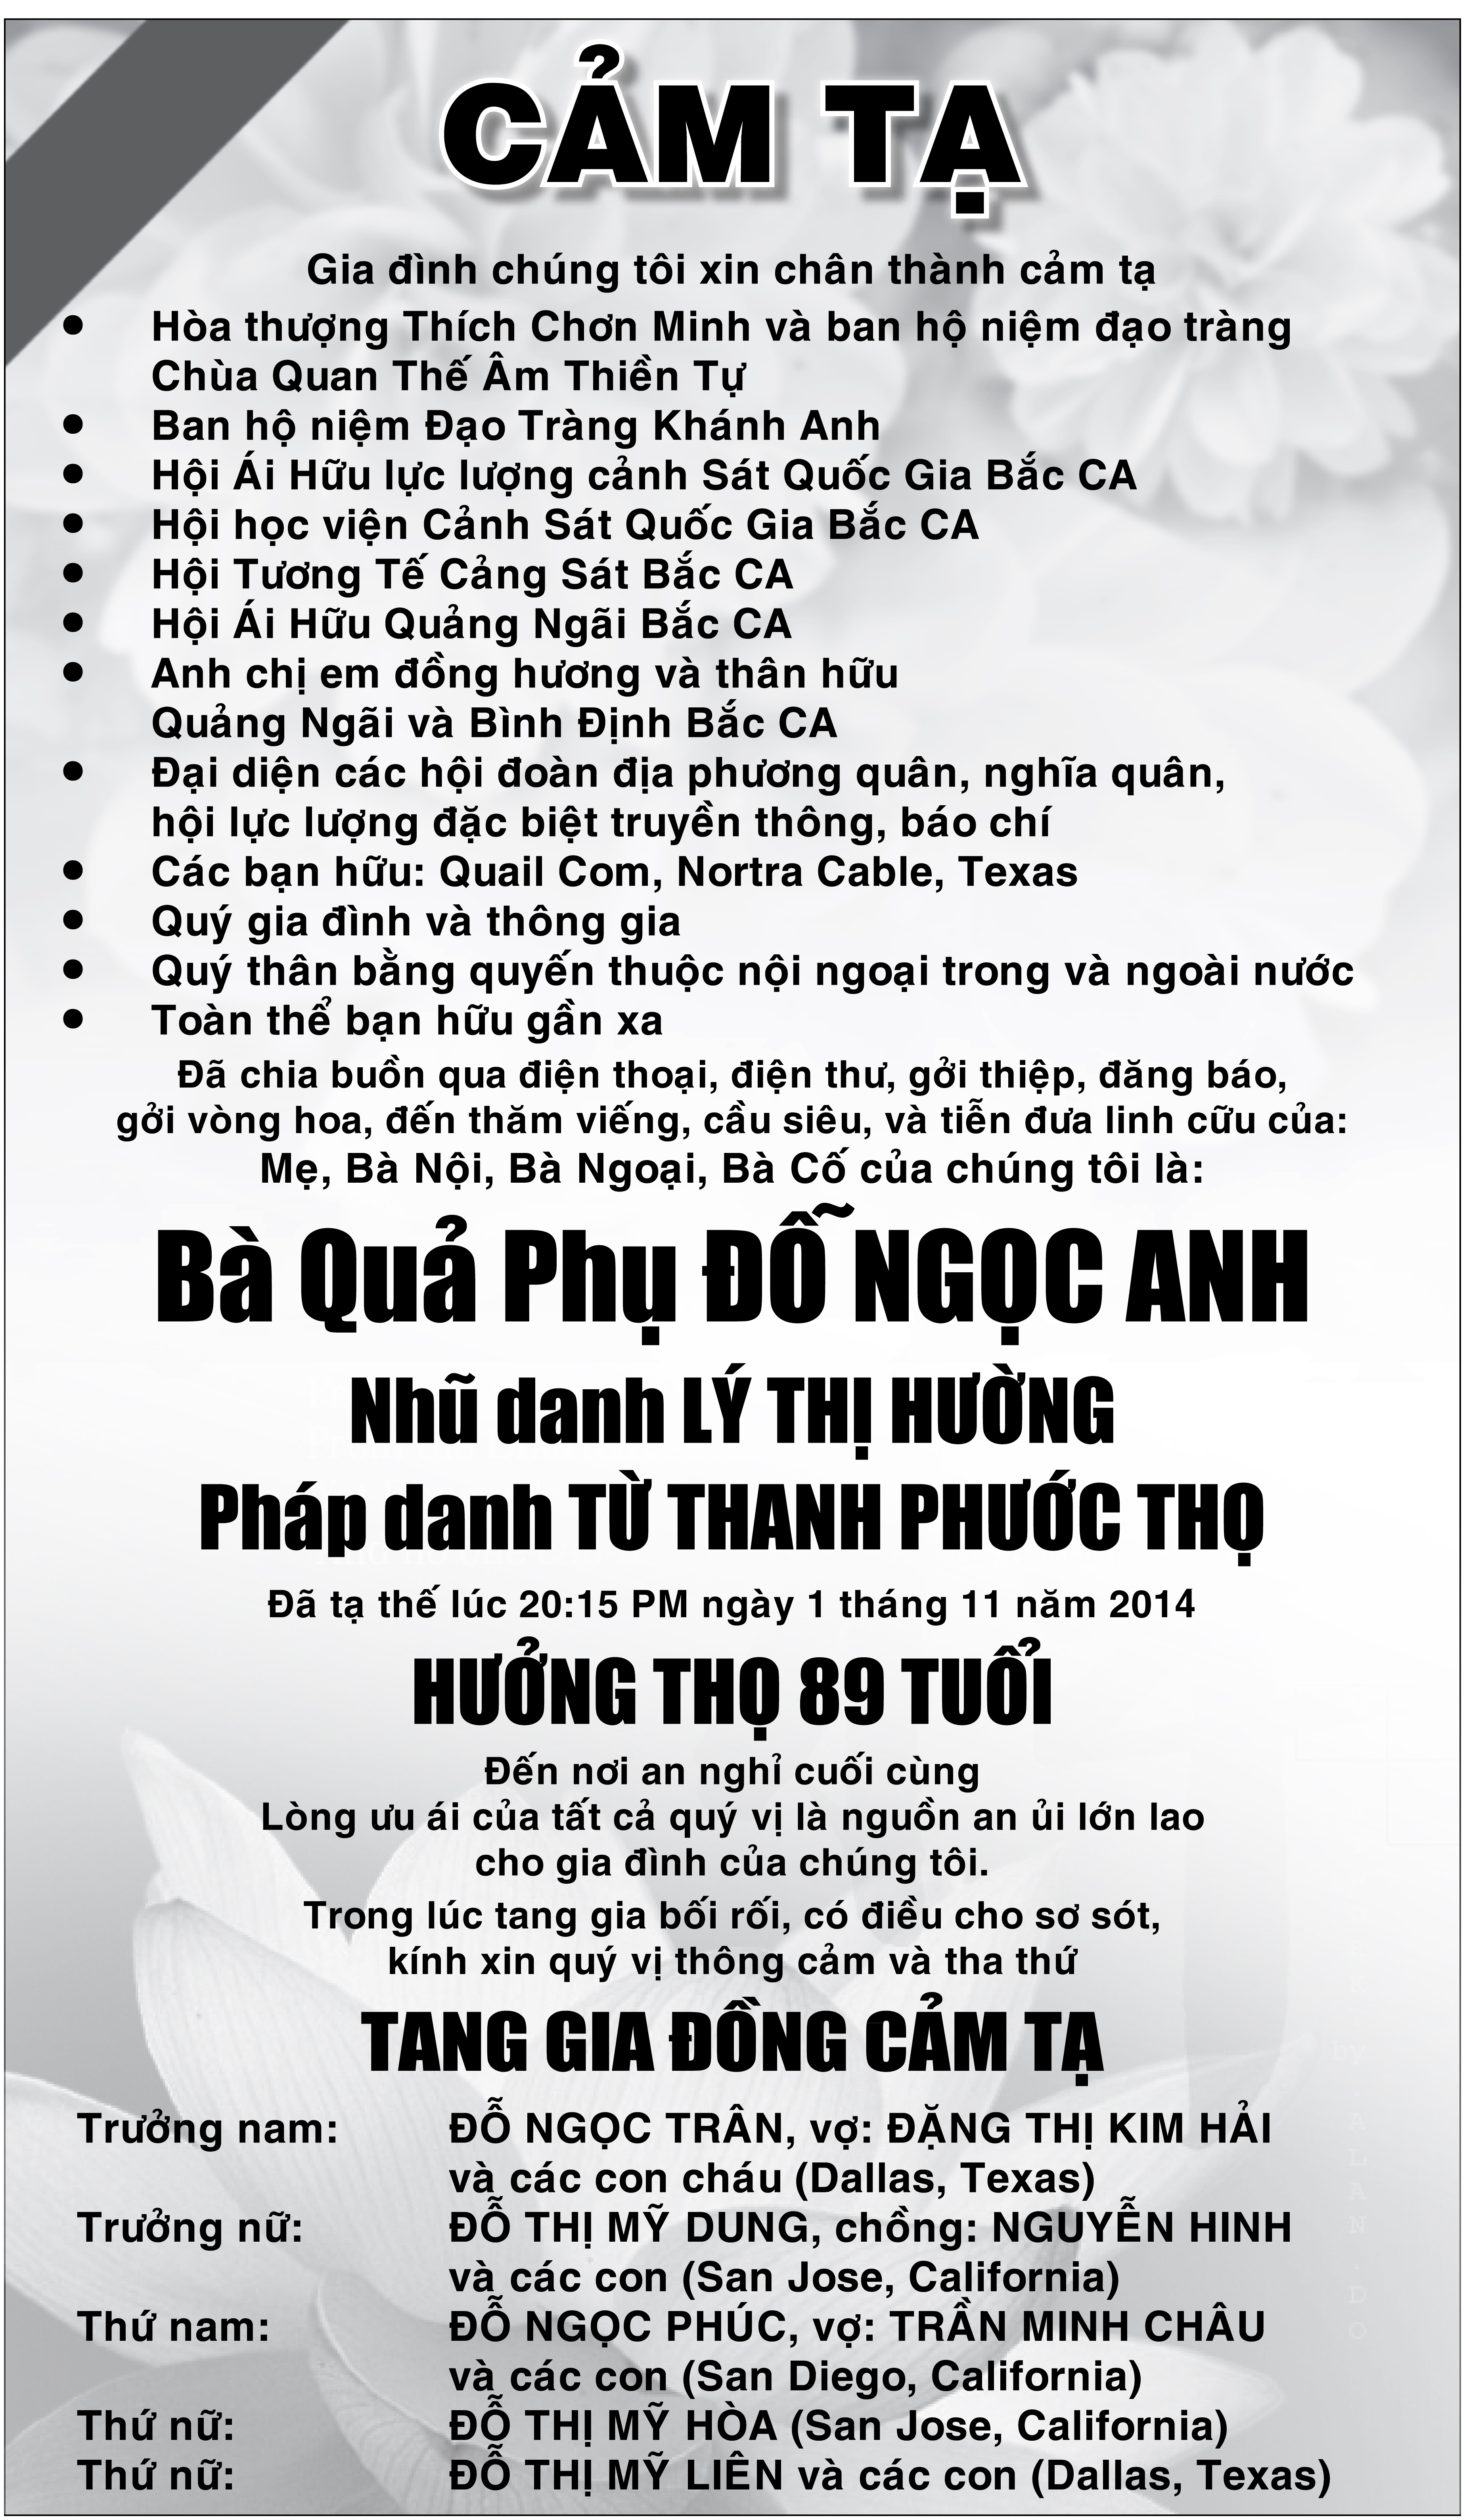 Cam Ta Ba Qua Phu Do Ngoc Anh